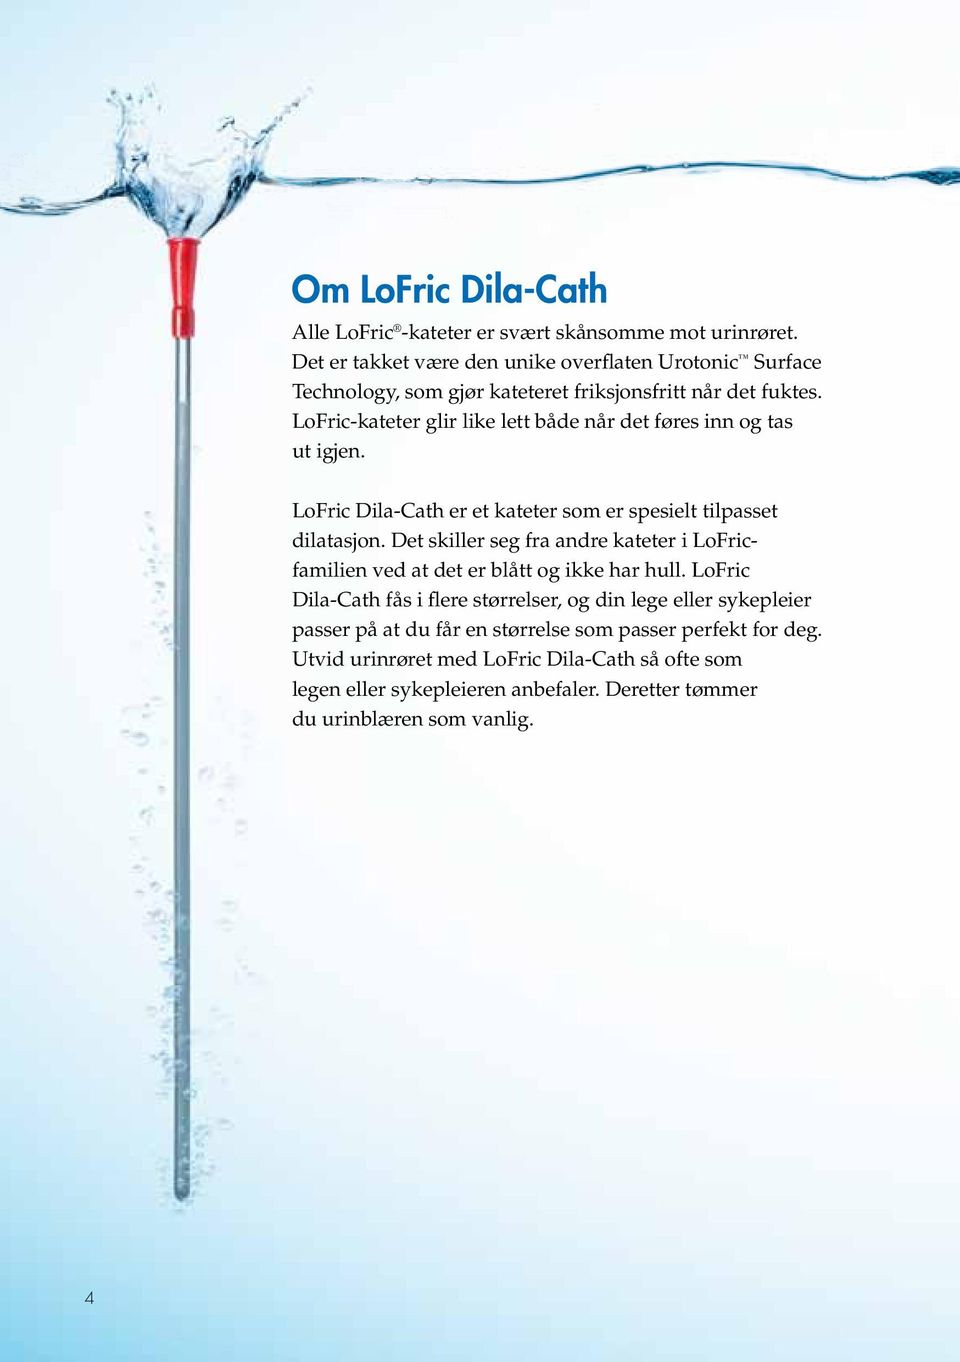 LoFric-kateter glir like lett både når det føres inn og tas ut igjen. LoFric Dila-Cath er et kateter som er spesielt tilpasset dilatasjon.